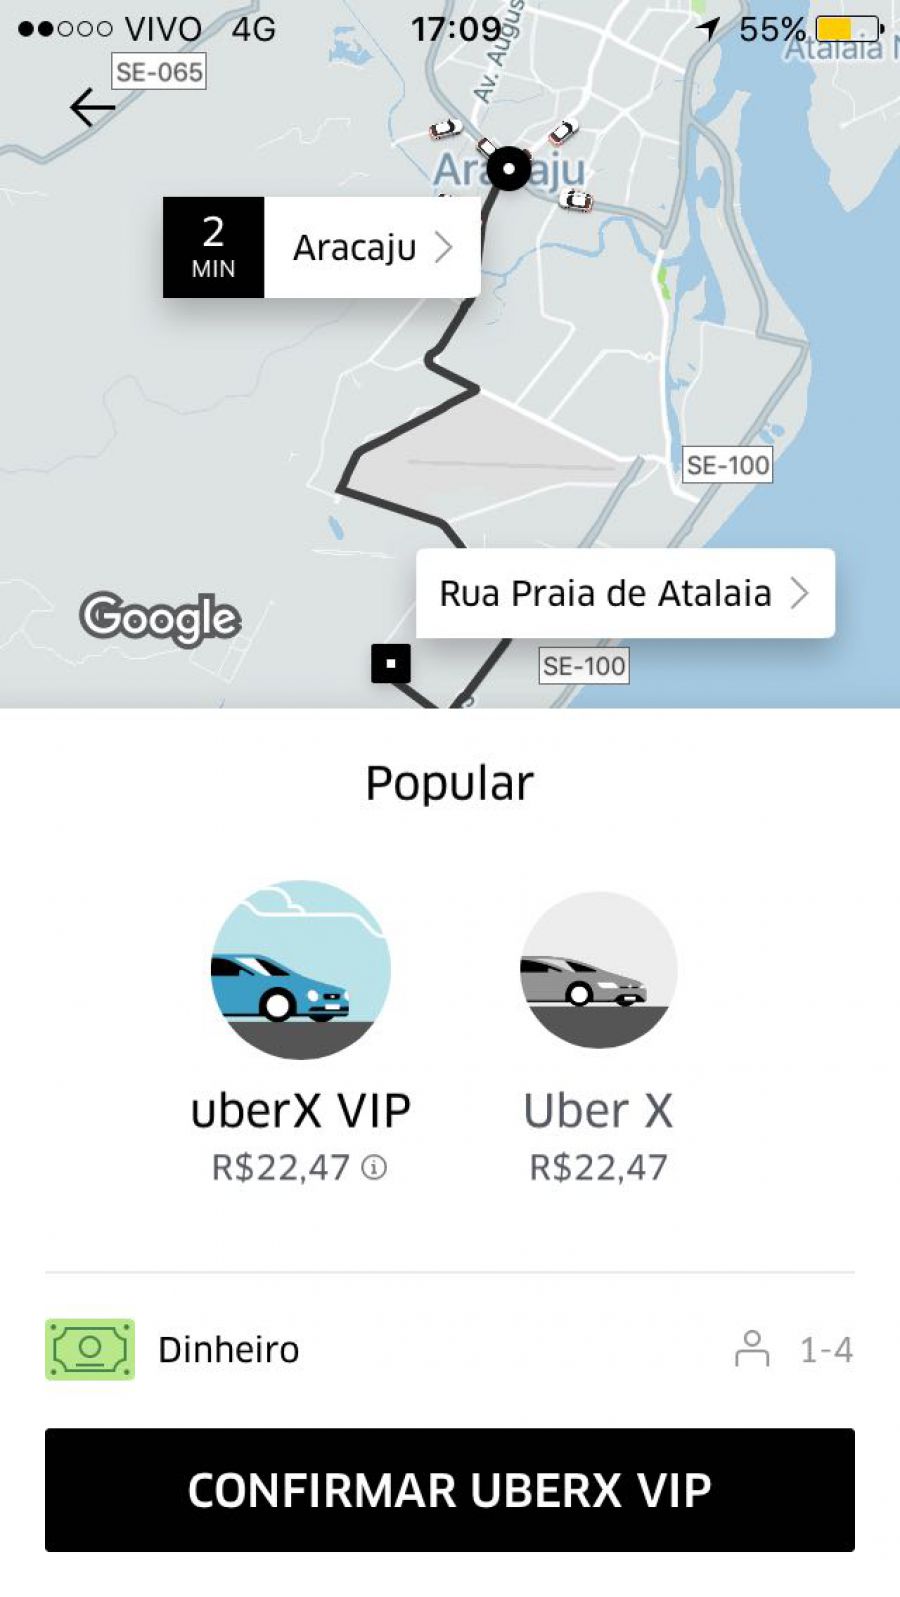 Uber cria categoria exclusiva para usuários frequentes